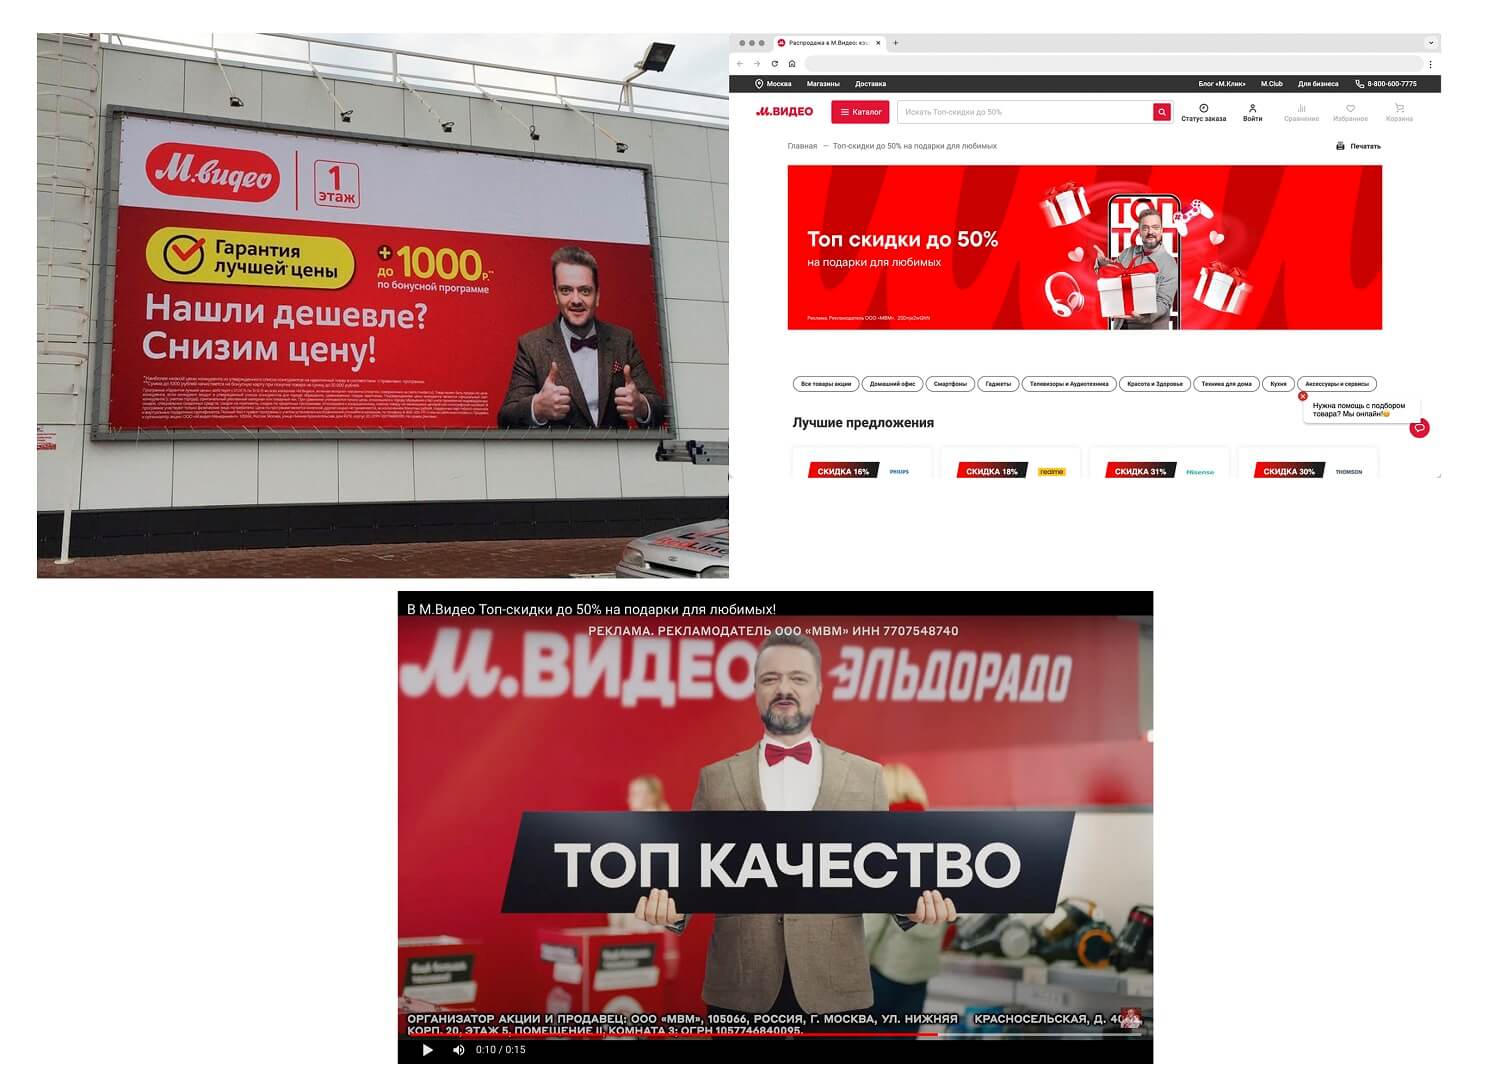 Реклама с Александром Пушным в «М.Видео»